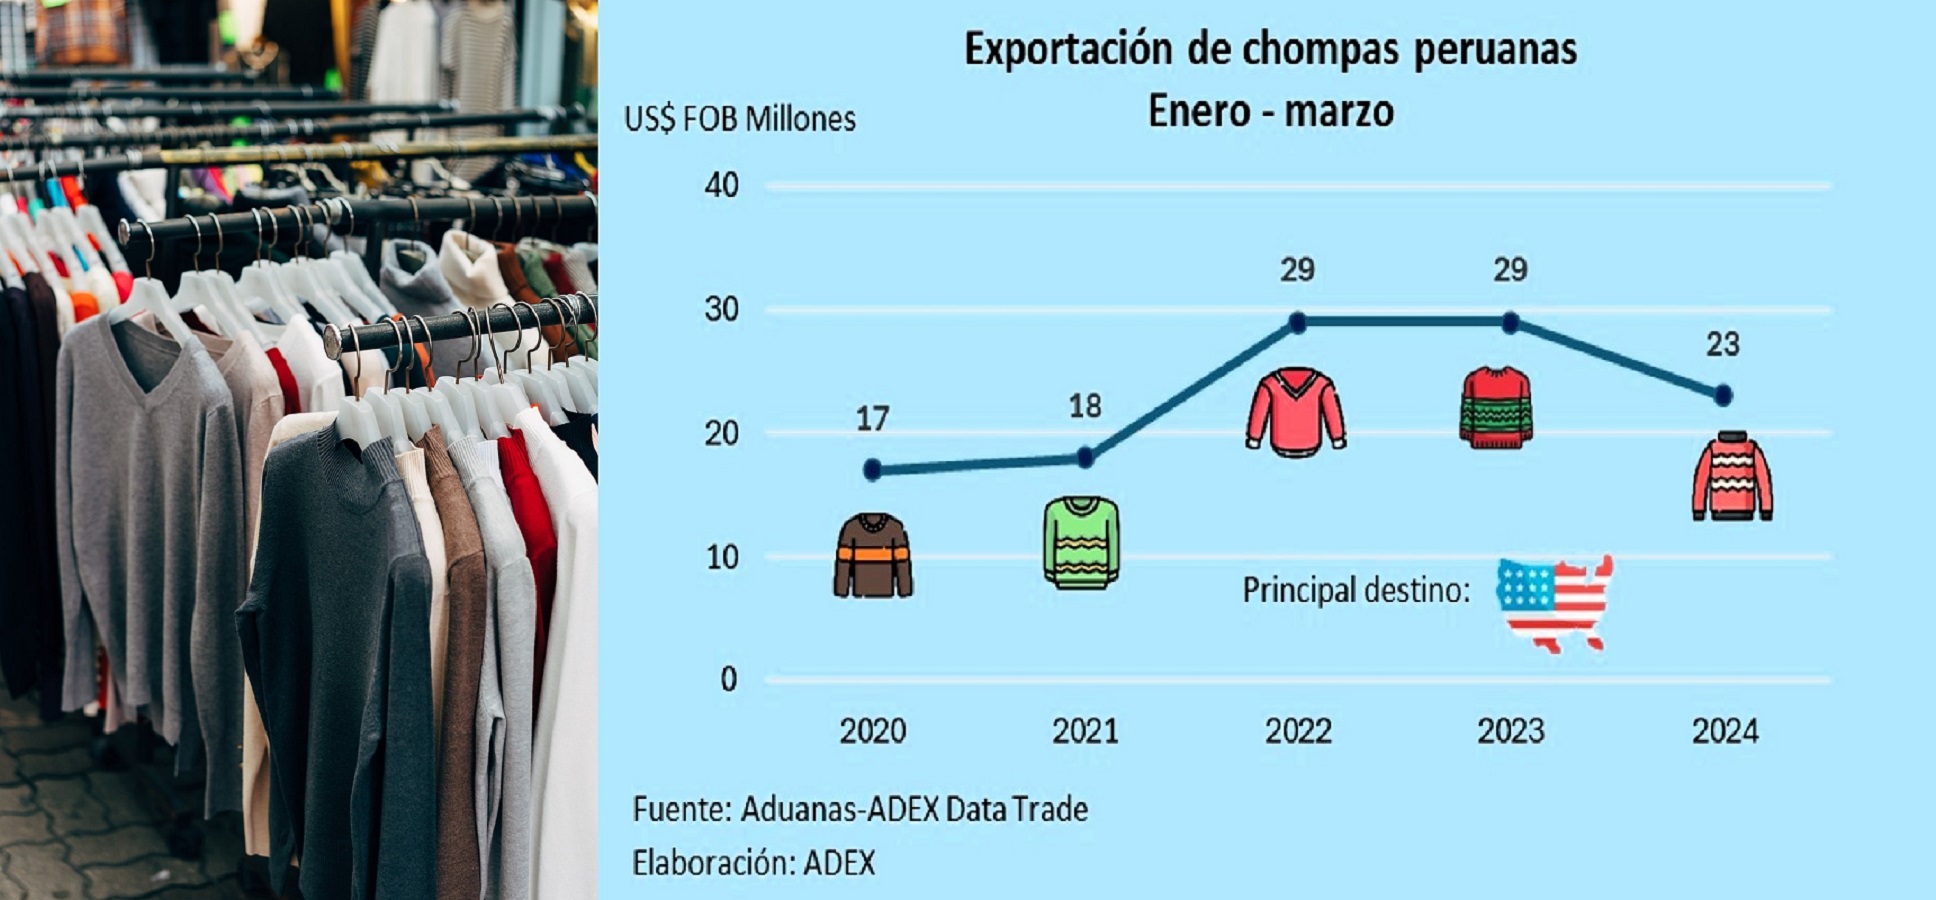 Envíos de chompas peruanas están presentes en 46 mercados del mundo, a la fecha suman US$ 23 millones 369 mil en el primer trimestre del 2024.